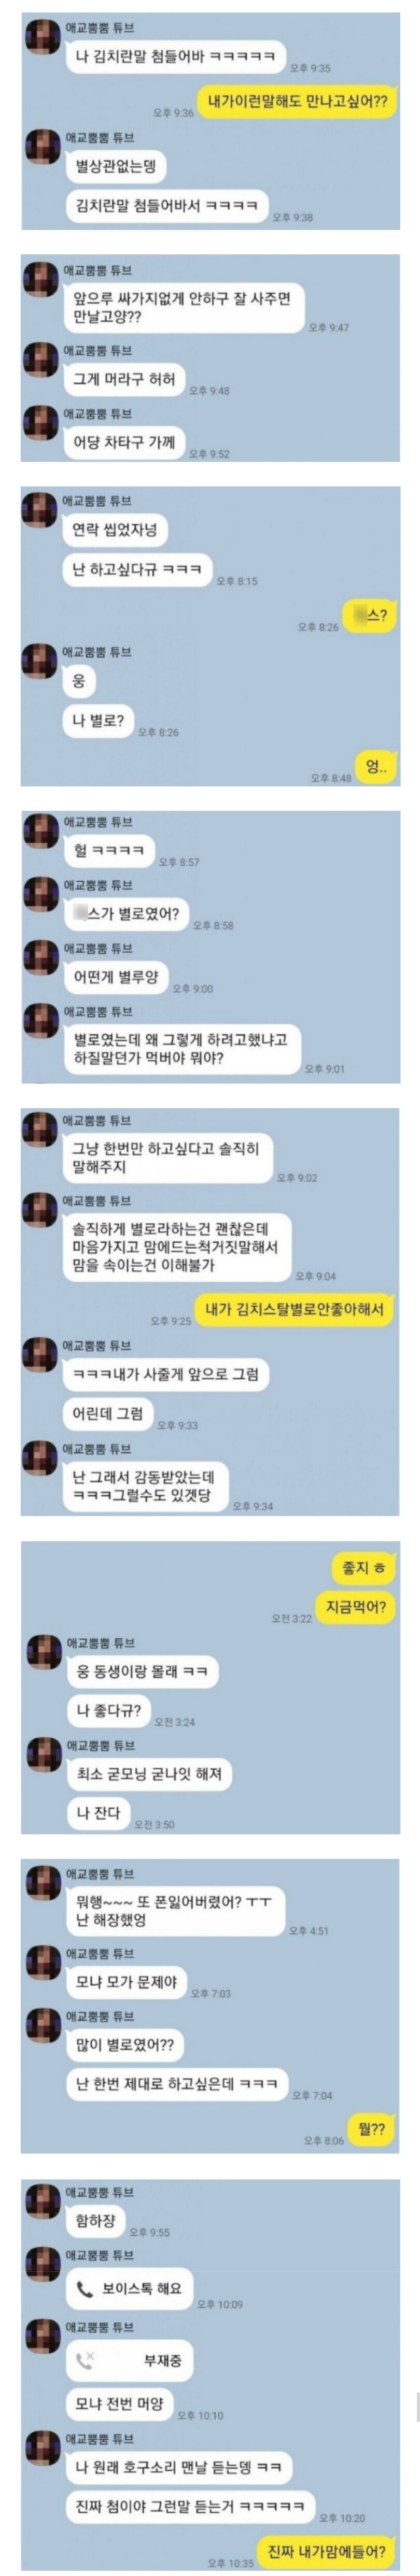 오이갤러 카톡 강제인증 2탄